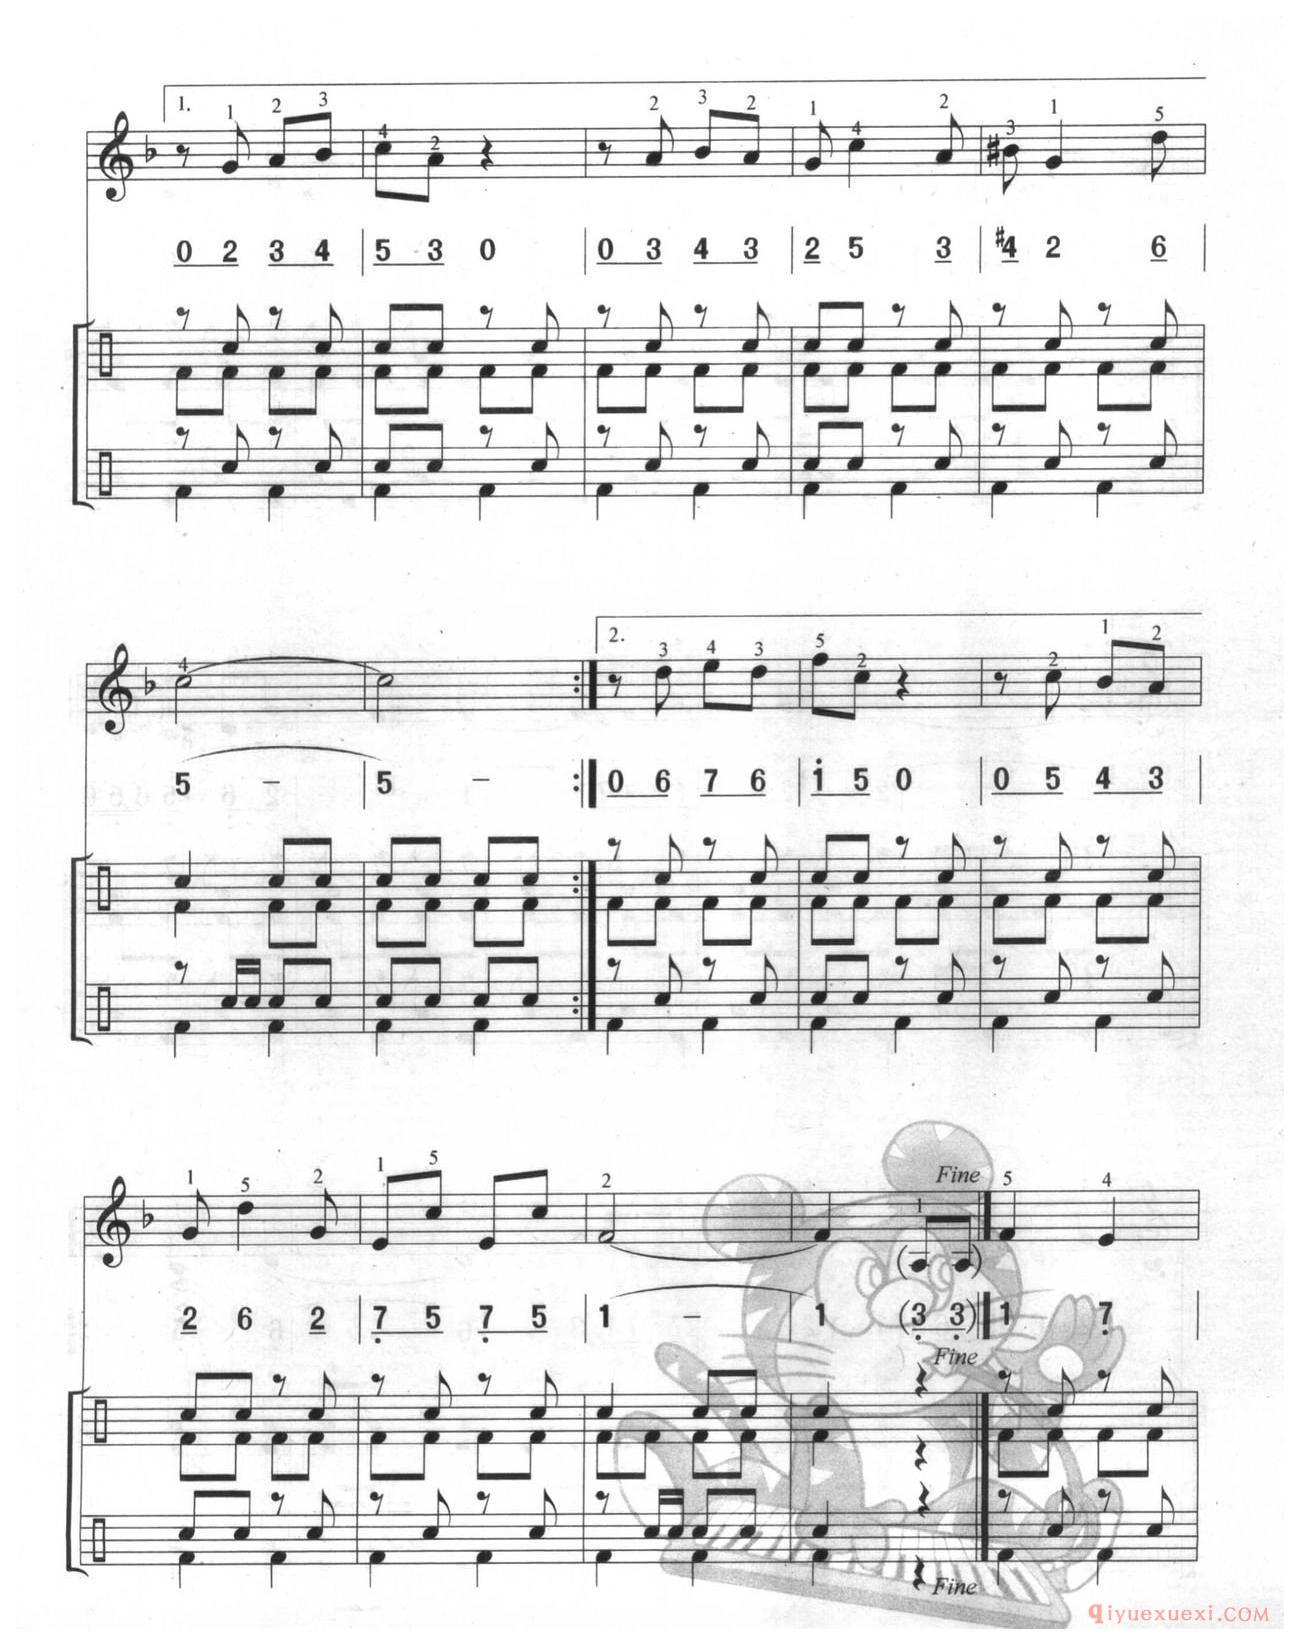 口风琴多声部乐曲《波基上校进行曲(总谱)与钢琴的练习》加入打击乐的练习